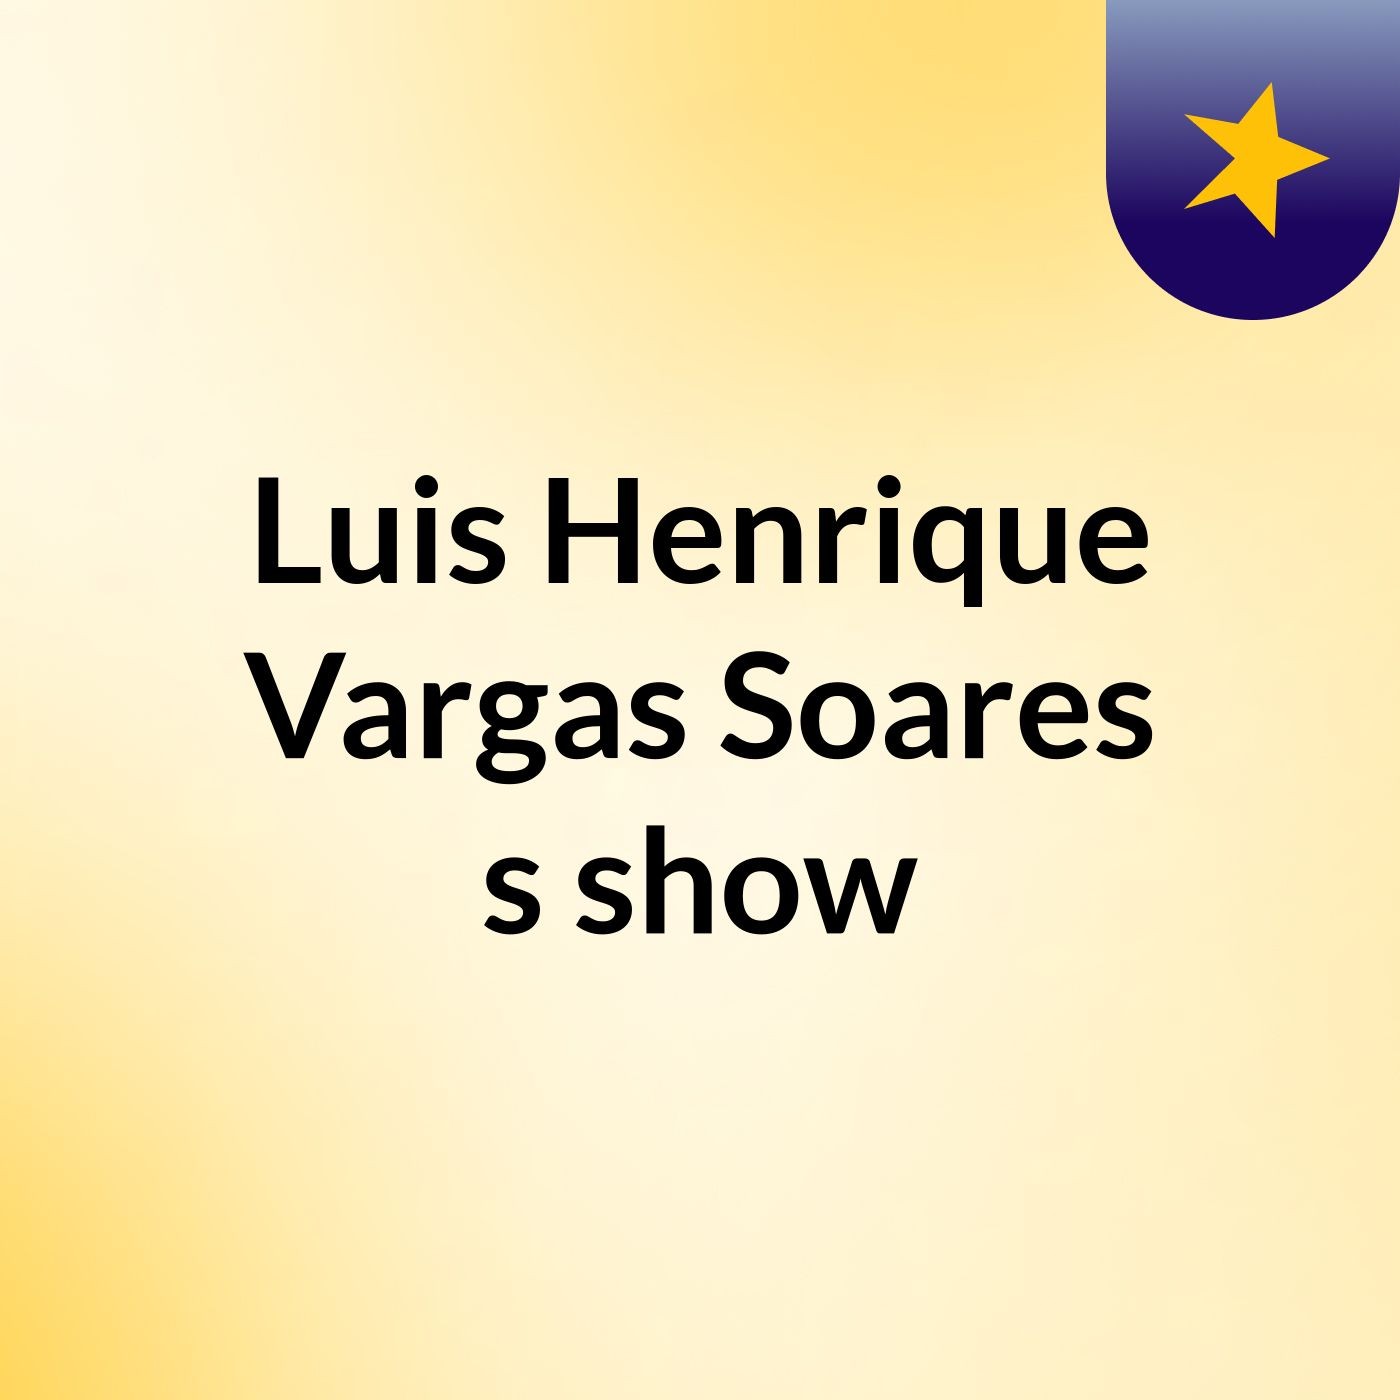 Luis Henrique Vargas Soares's show